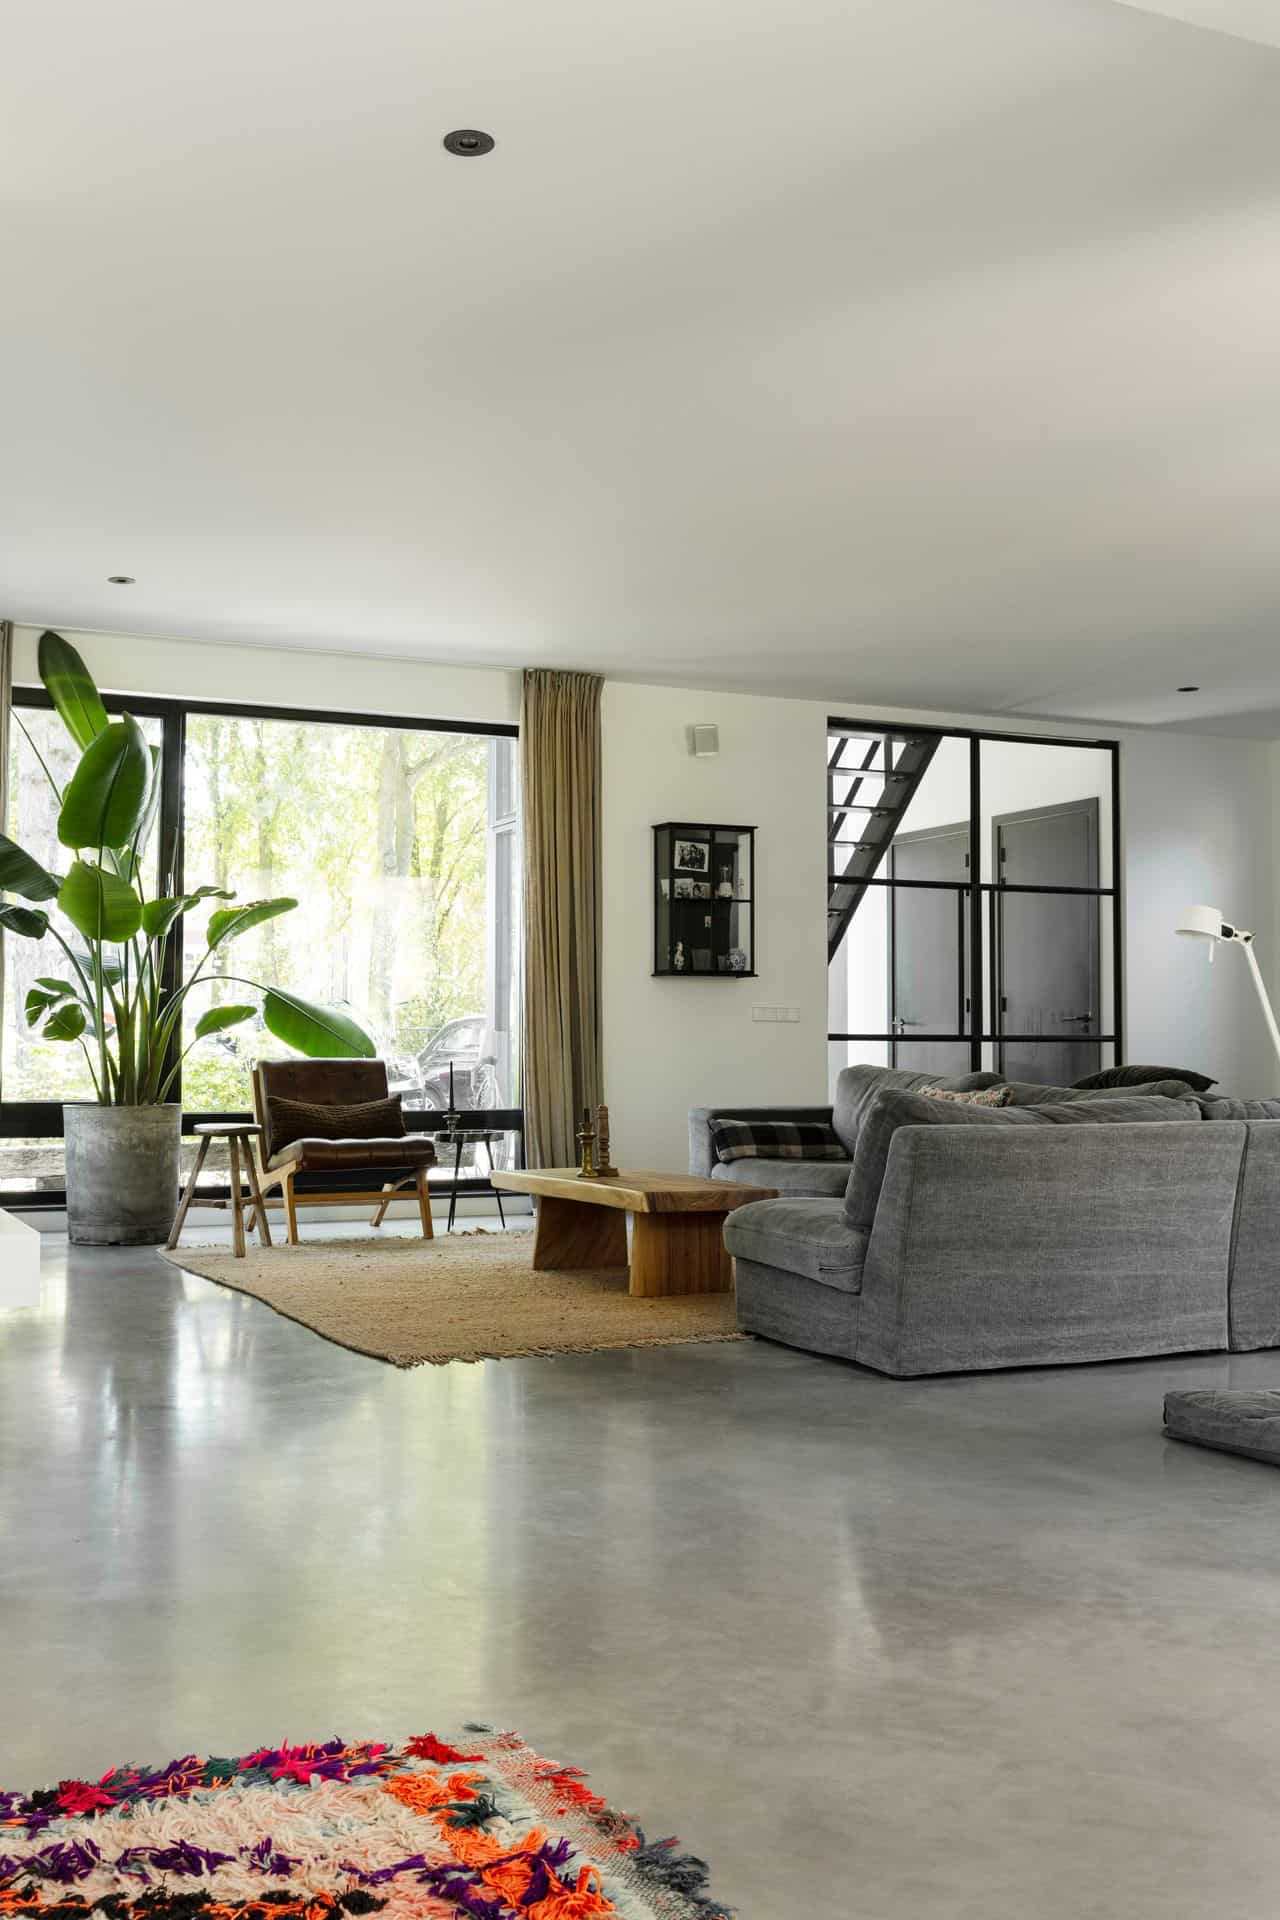 Woonkamer met een grijze bank, houten tafeltje, grote plant, bruine stoel en een gevlinderde betonvloer.